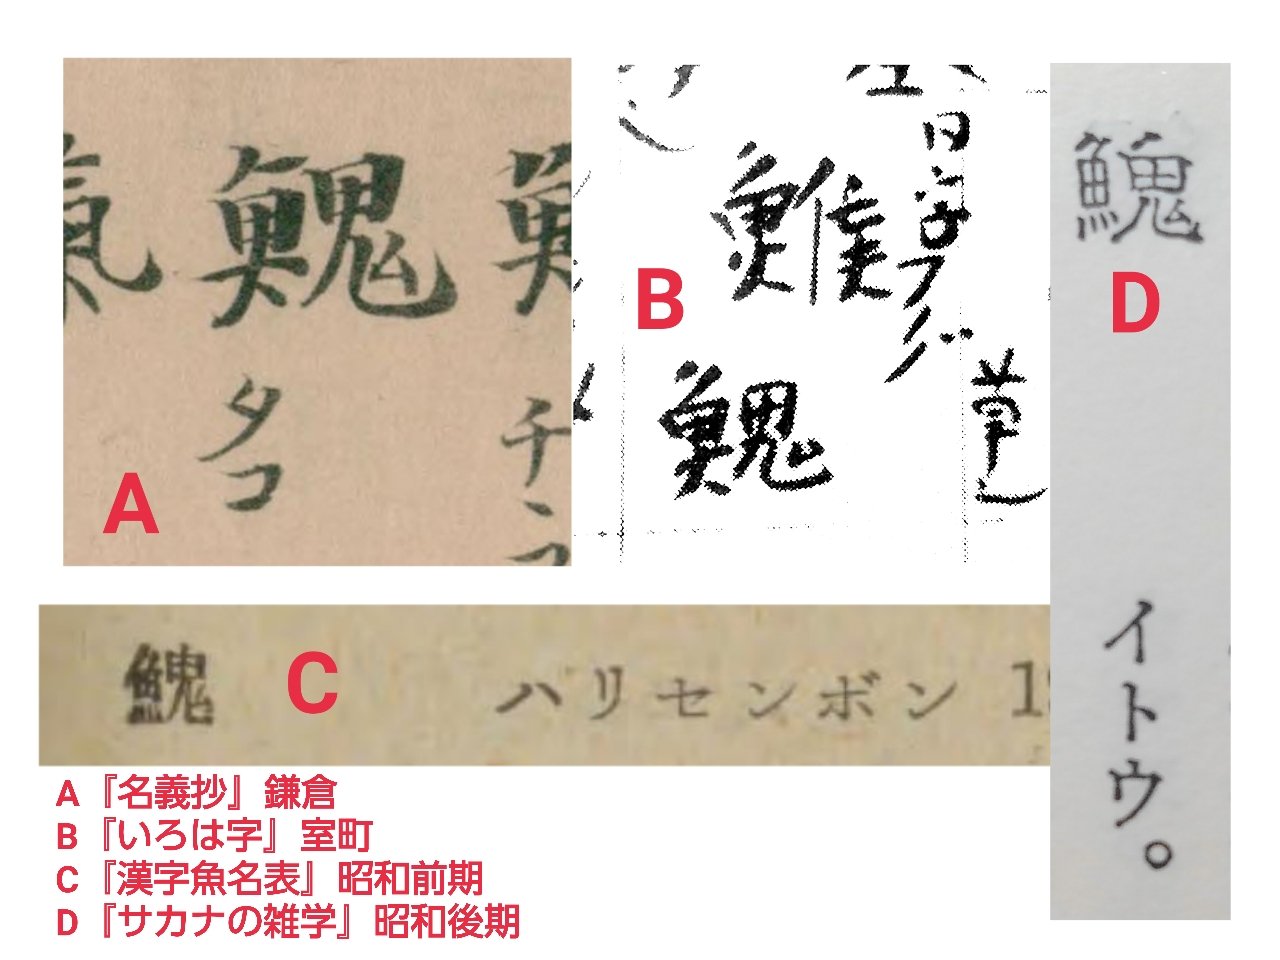 拾萬字鏡 日本では鎌倉時代に タコ 室町時代に フグ を表す字として 𩹷 が辞典に載っており さらに昭和期には ハリセンボン や イトウ を表す字として 日本語圏では何度も意味が変わっている T Co J3wuyjep6k Twitter